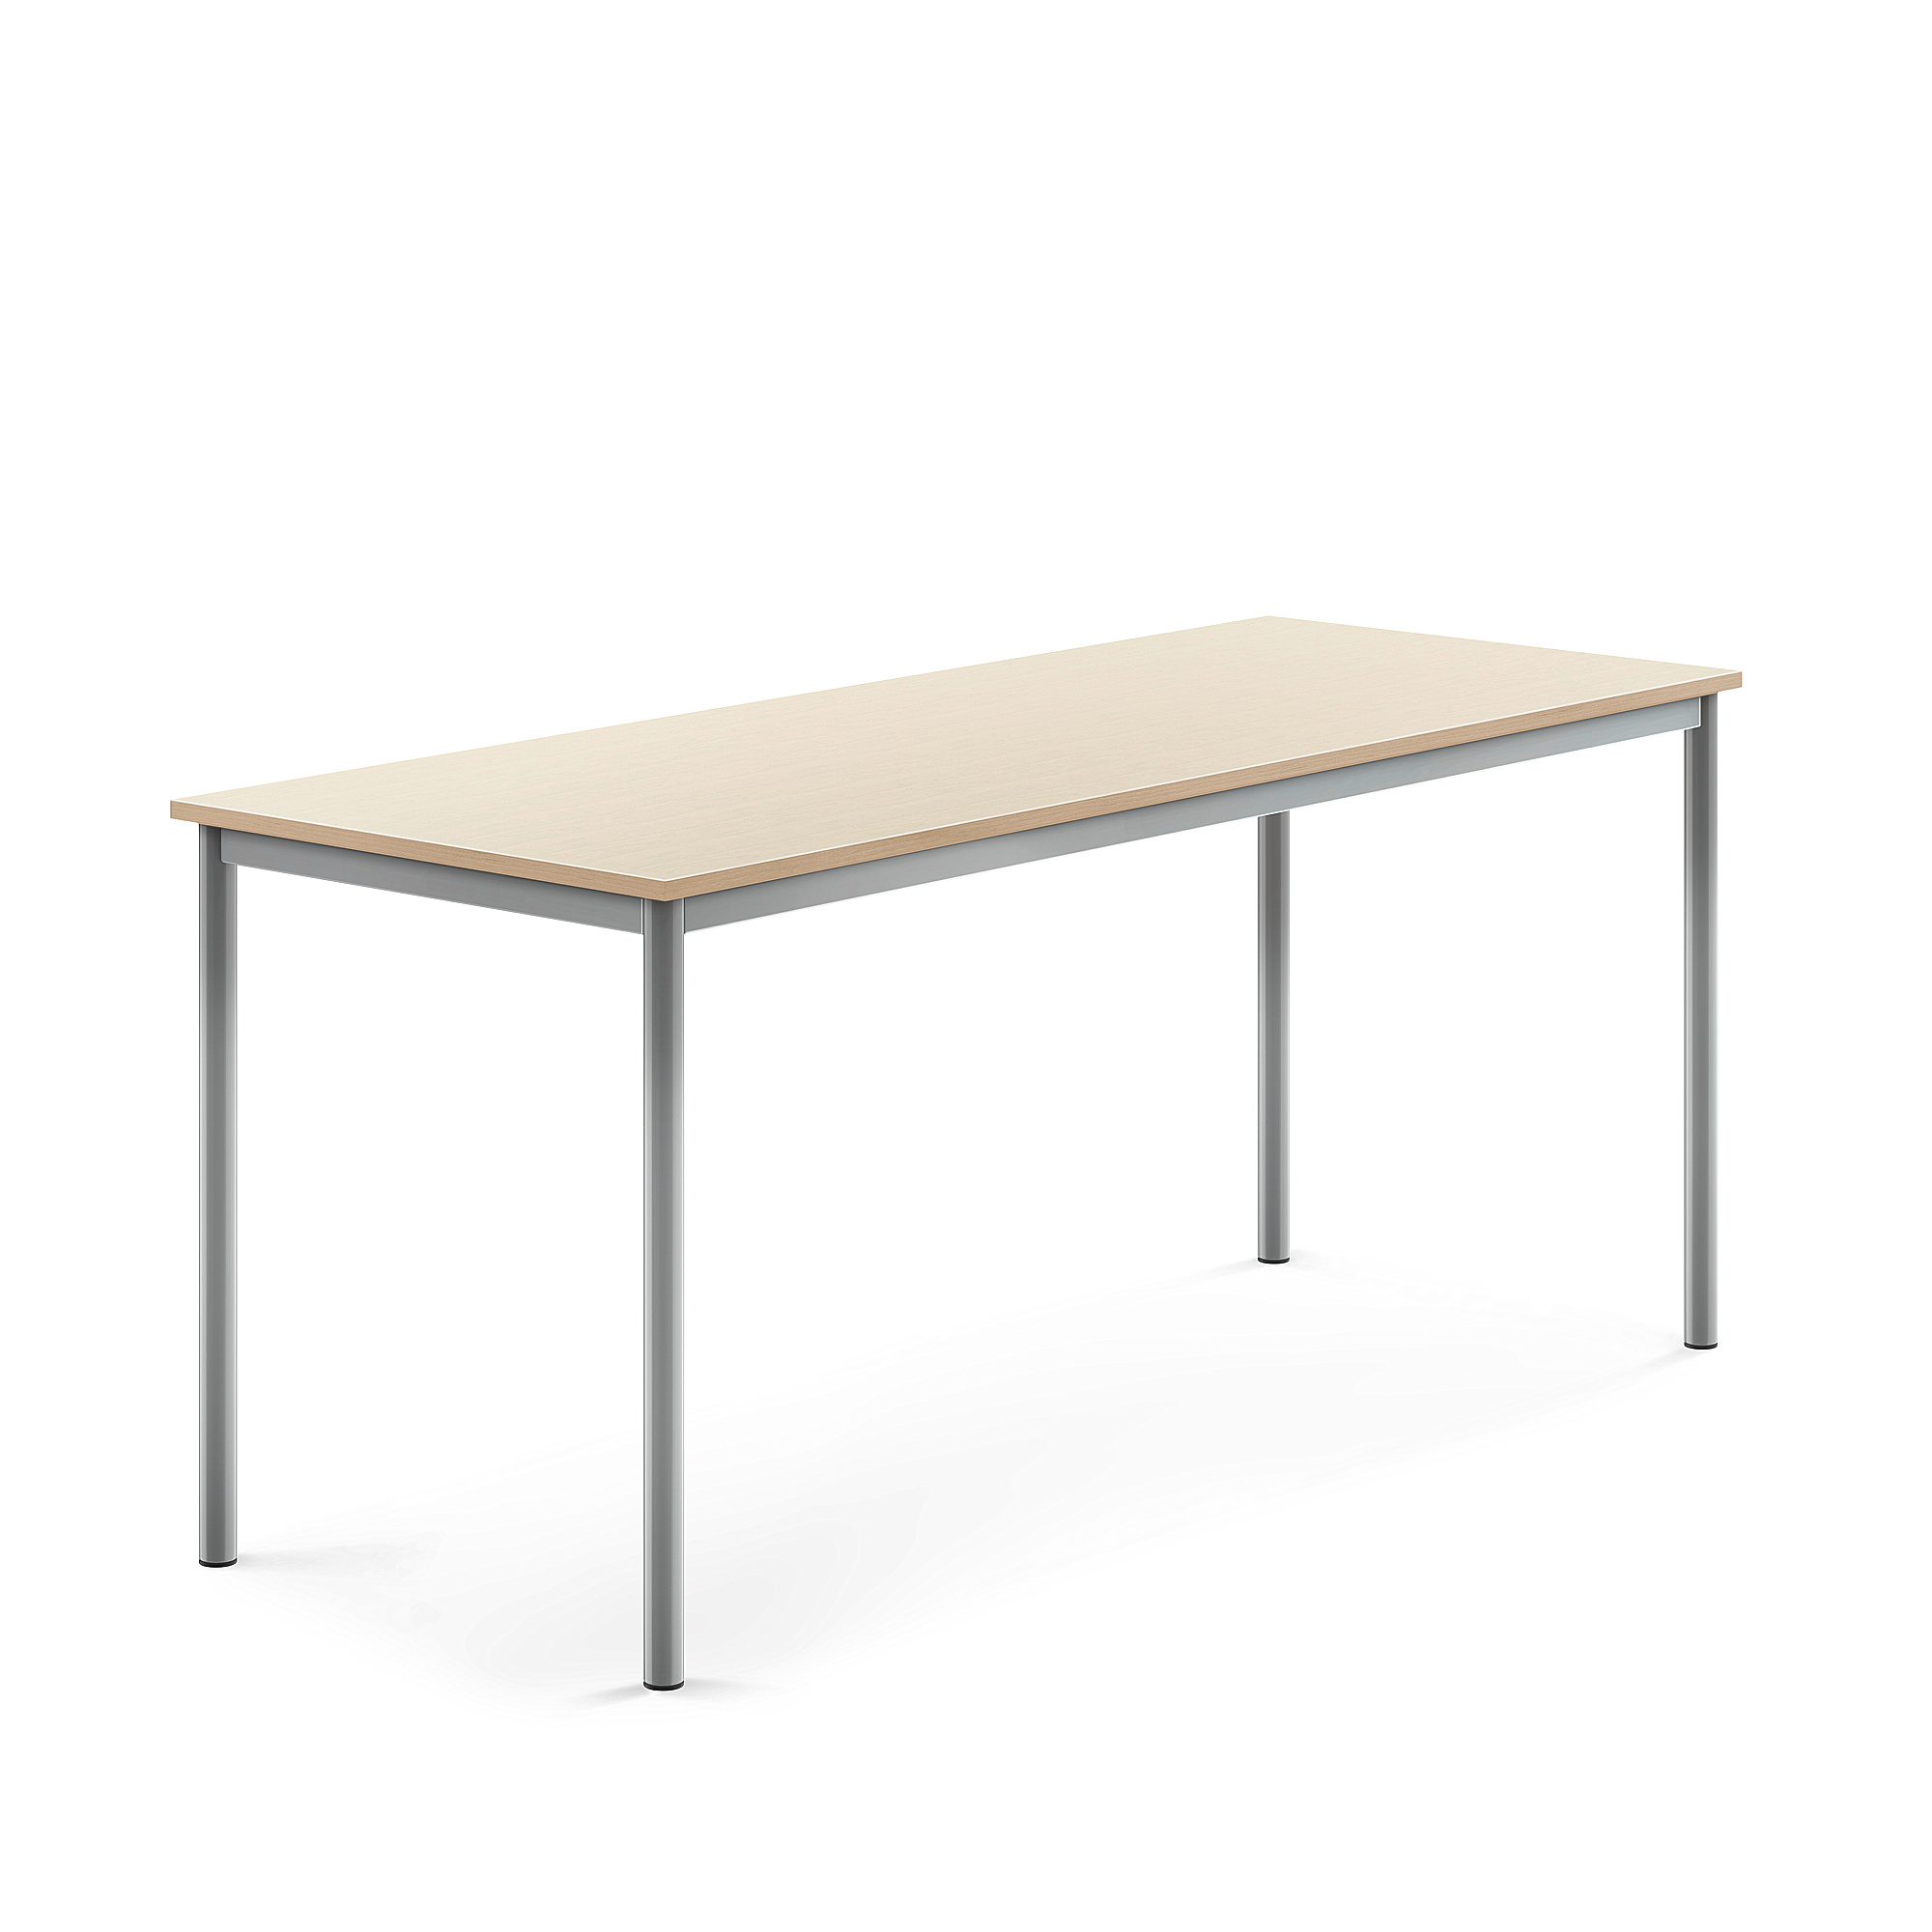 Stůl BORÅS, 1800x700x760 mm, stříbrné nohy, HPL deska, bříza